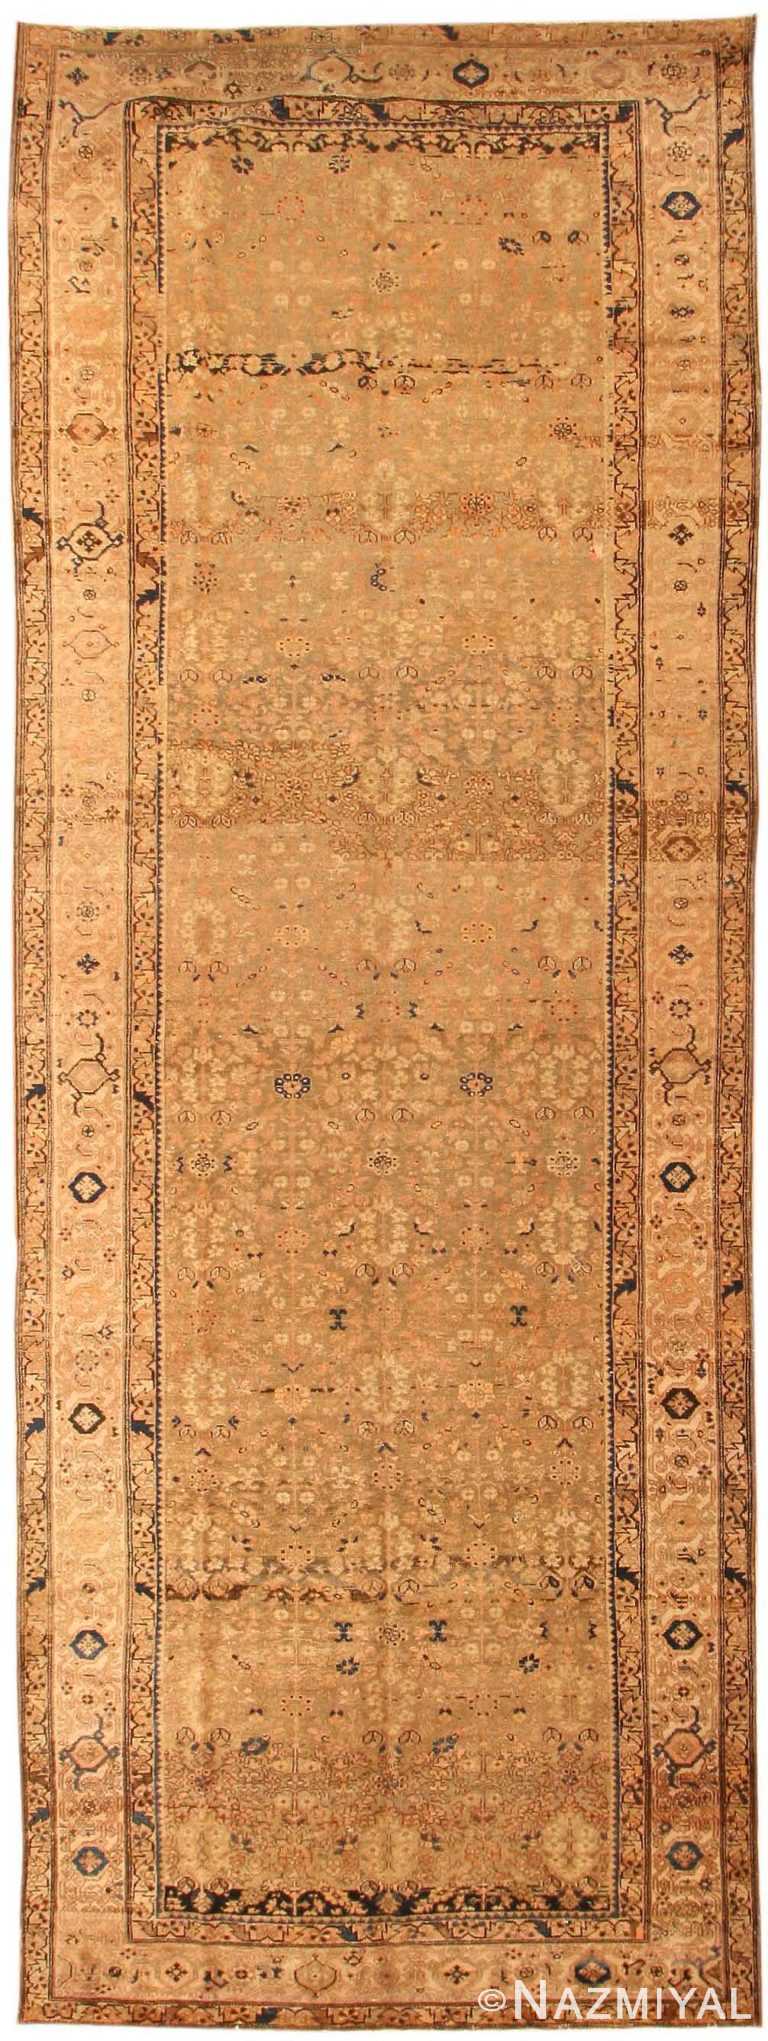 Antique Farahan Persian Rug 43791 Nazmiyal